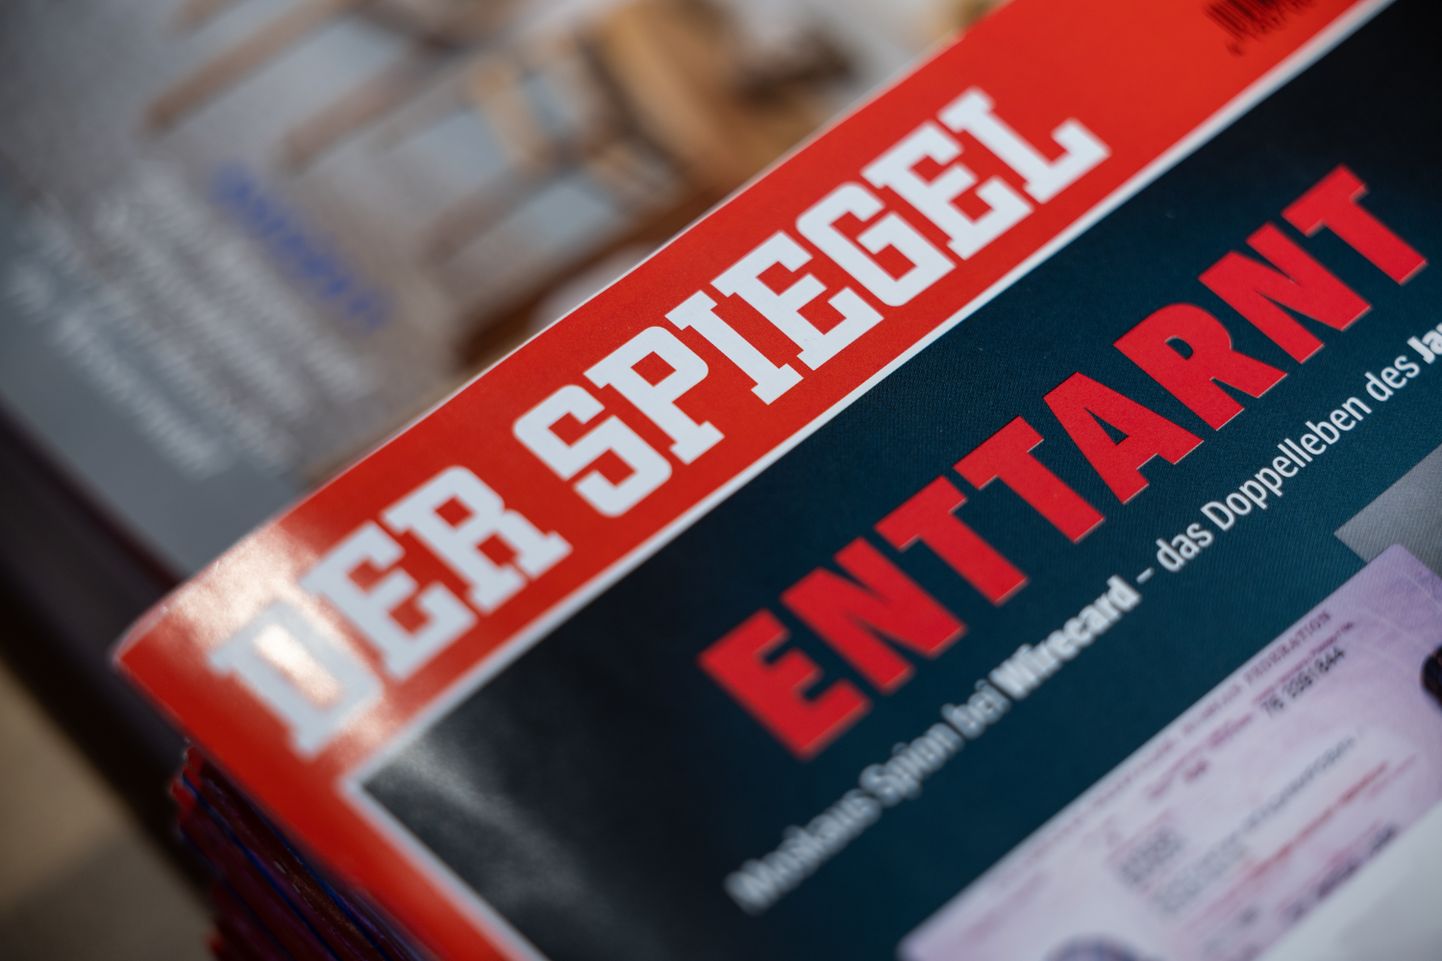 Журнал Der Spiegel